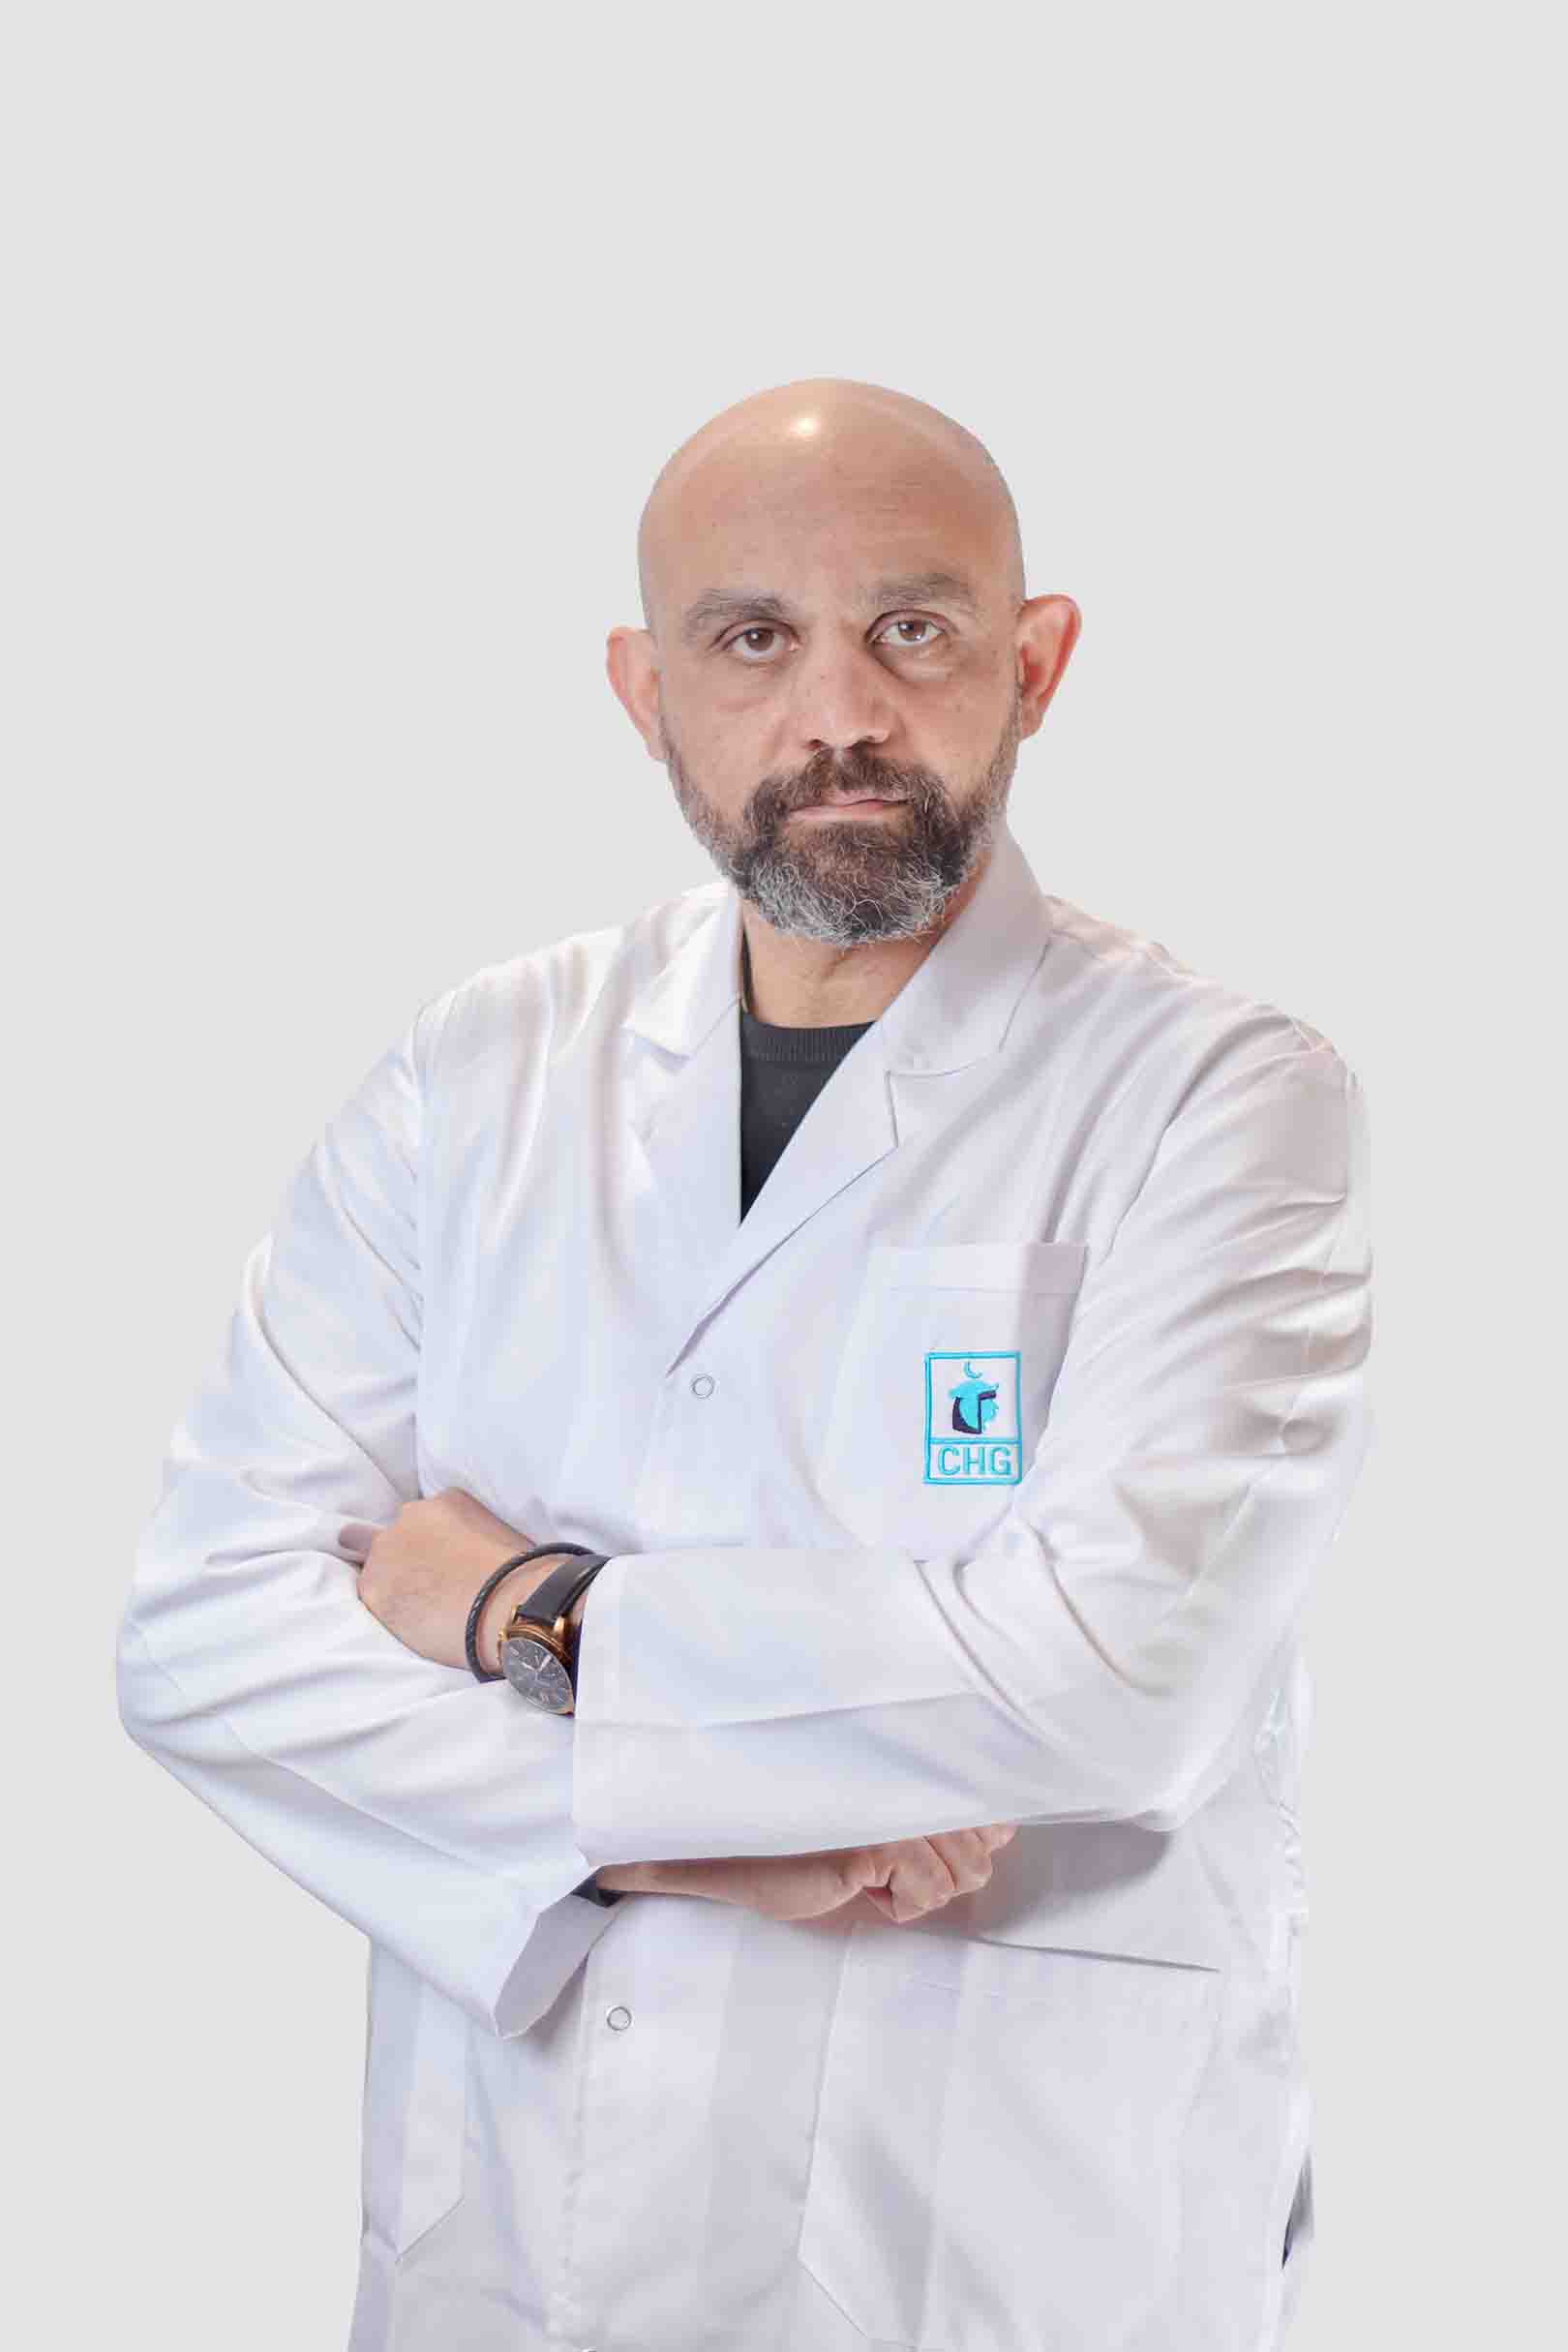 Dr. Mohamed Hassan Ali Suleiman: Urosurgeon in Cairo, Egypt